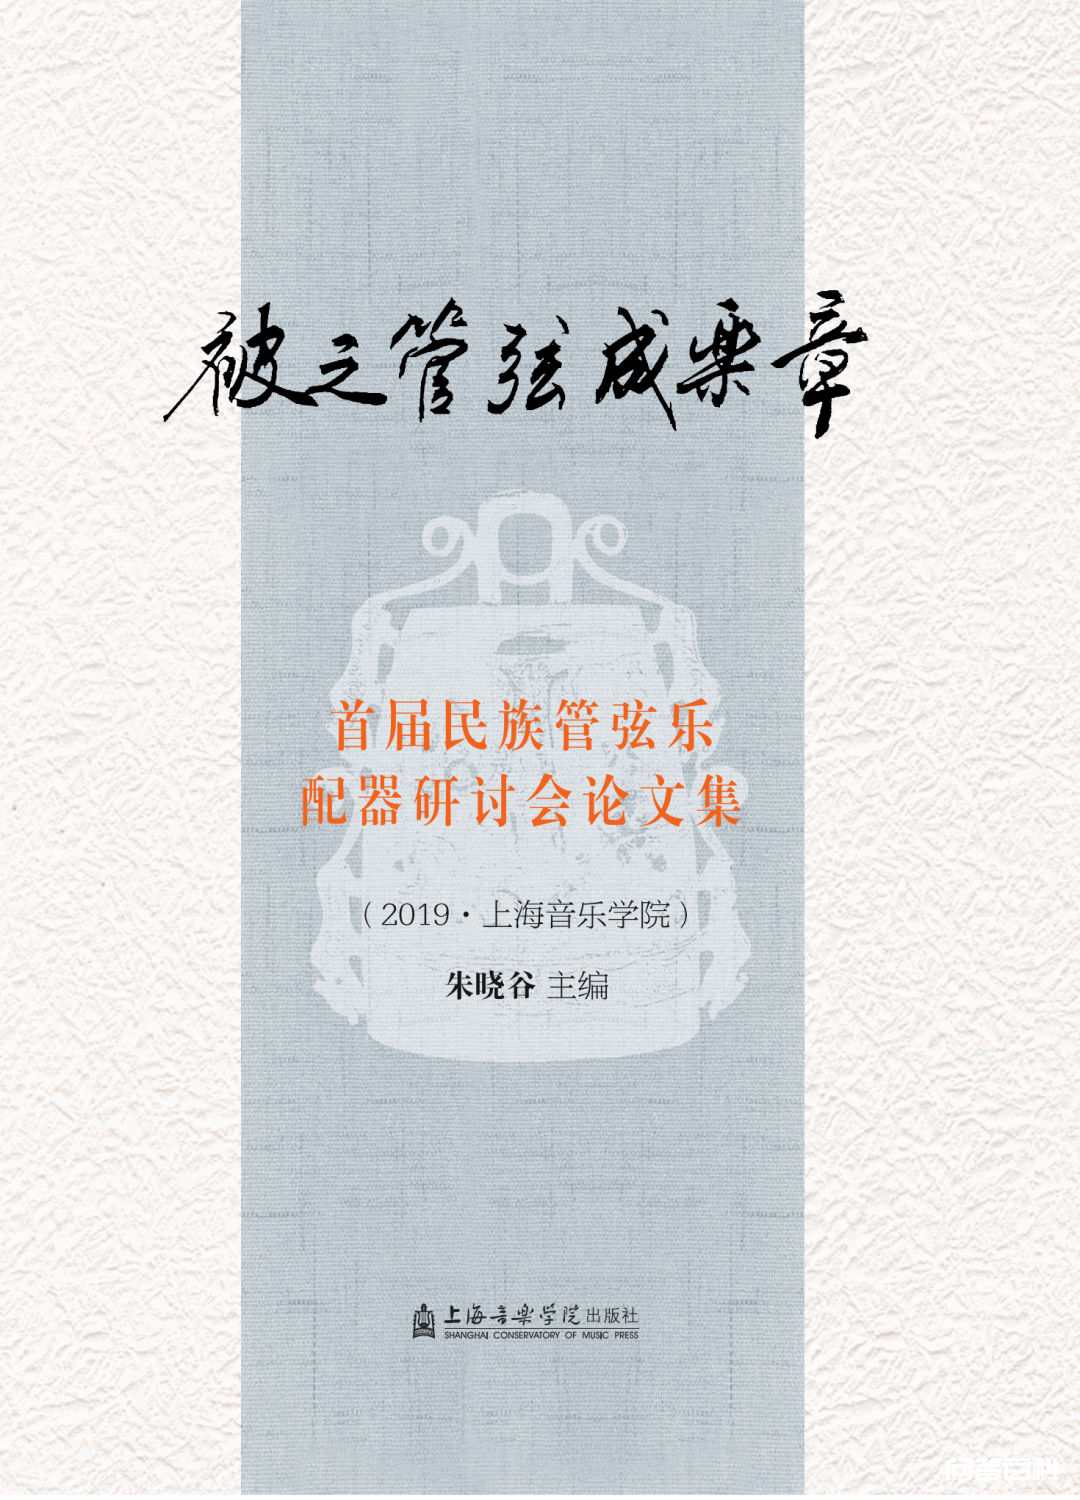 上海出版·每月书单 | 上海音乐学院出版社2022年6月书单